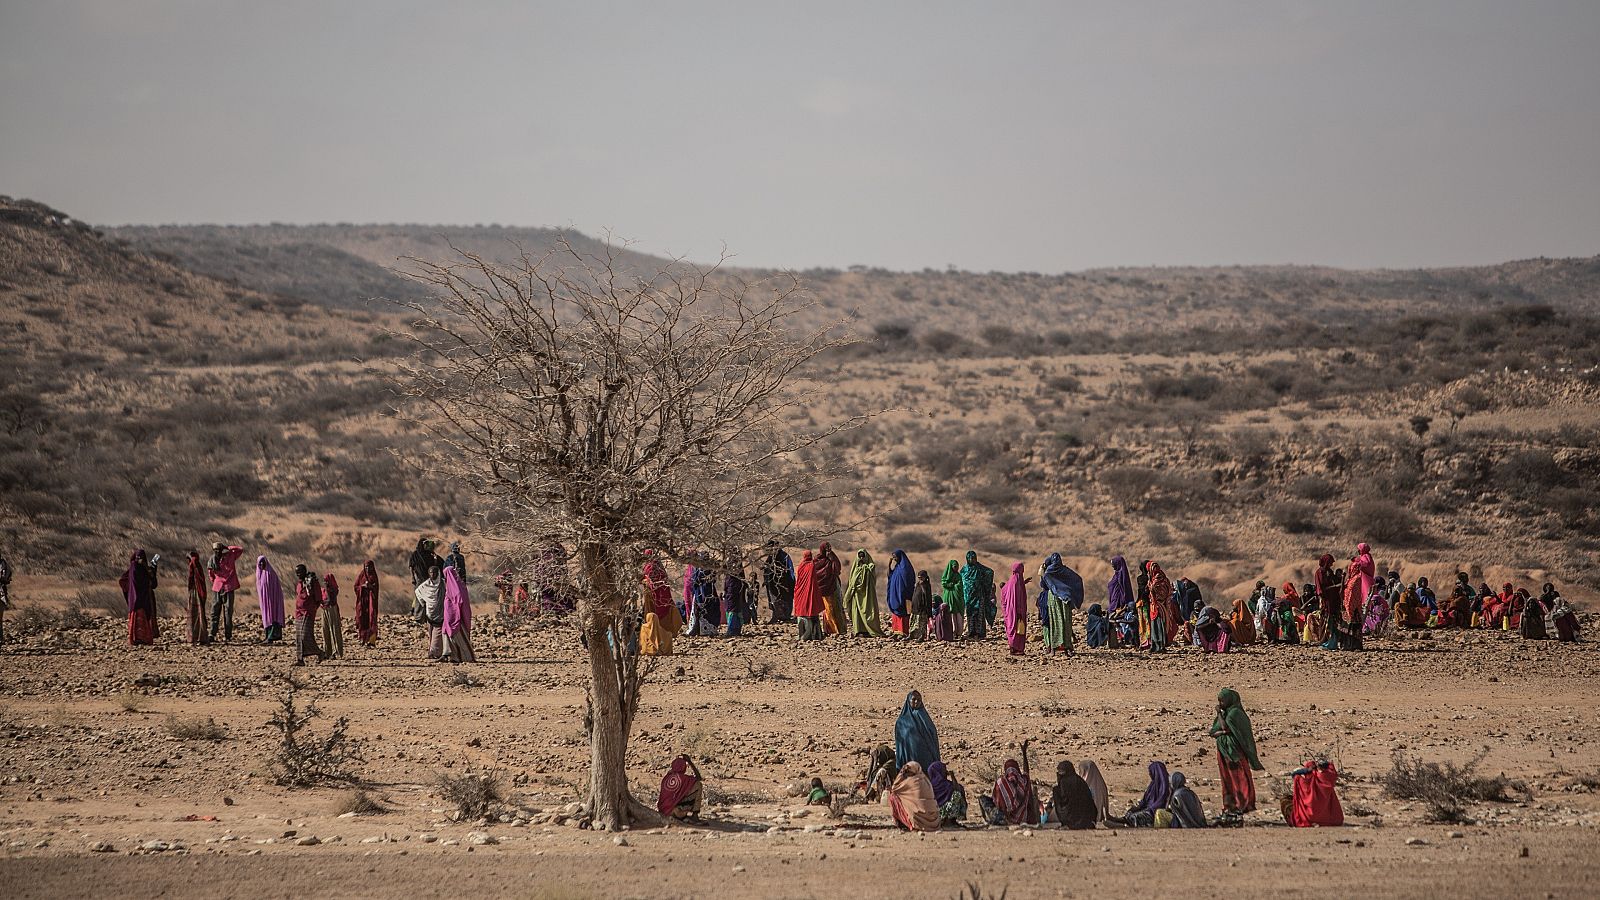  En Somalilandia y Somalia aproximadamente 4,9 millones de personas padecen inseguridad alimentaria y 2,6 millones de desplazados internos